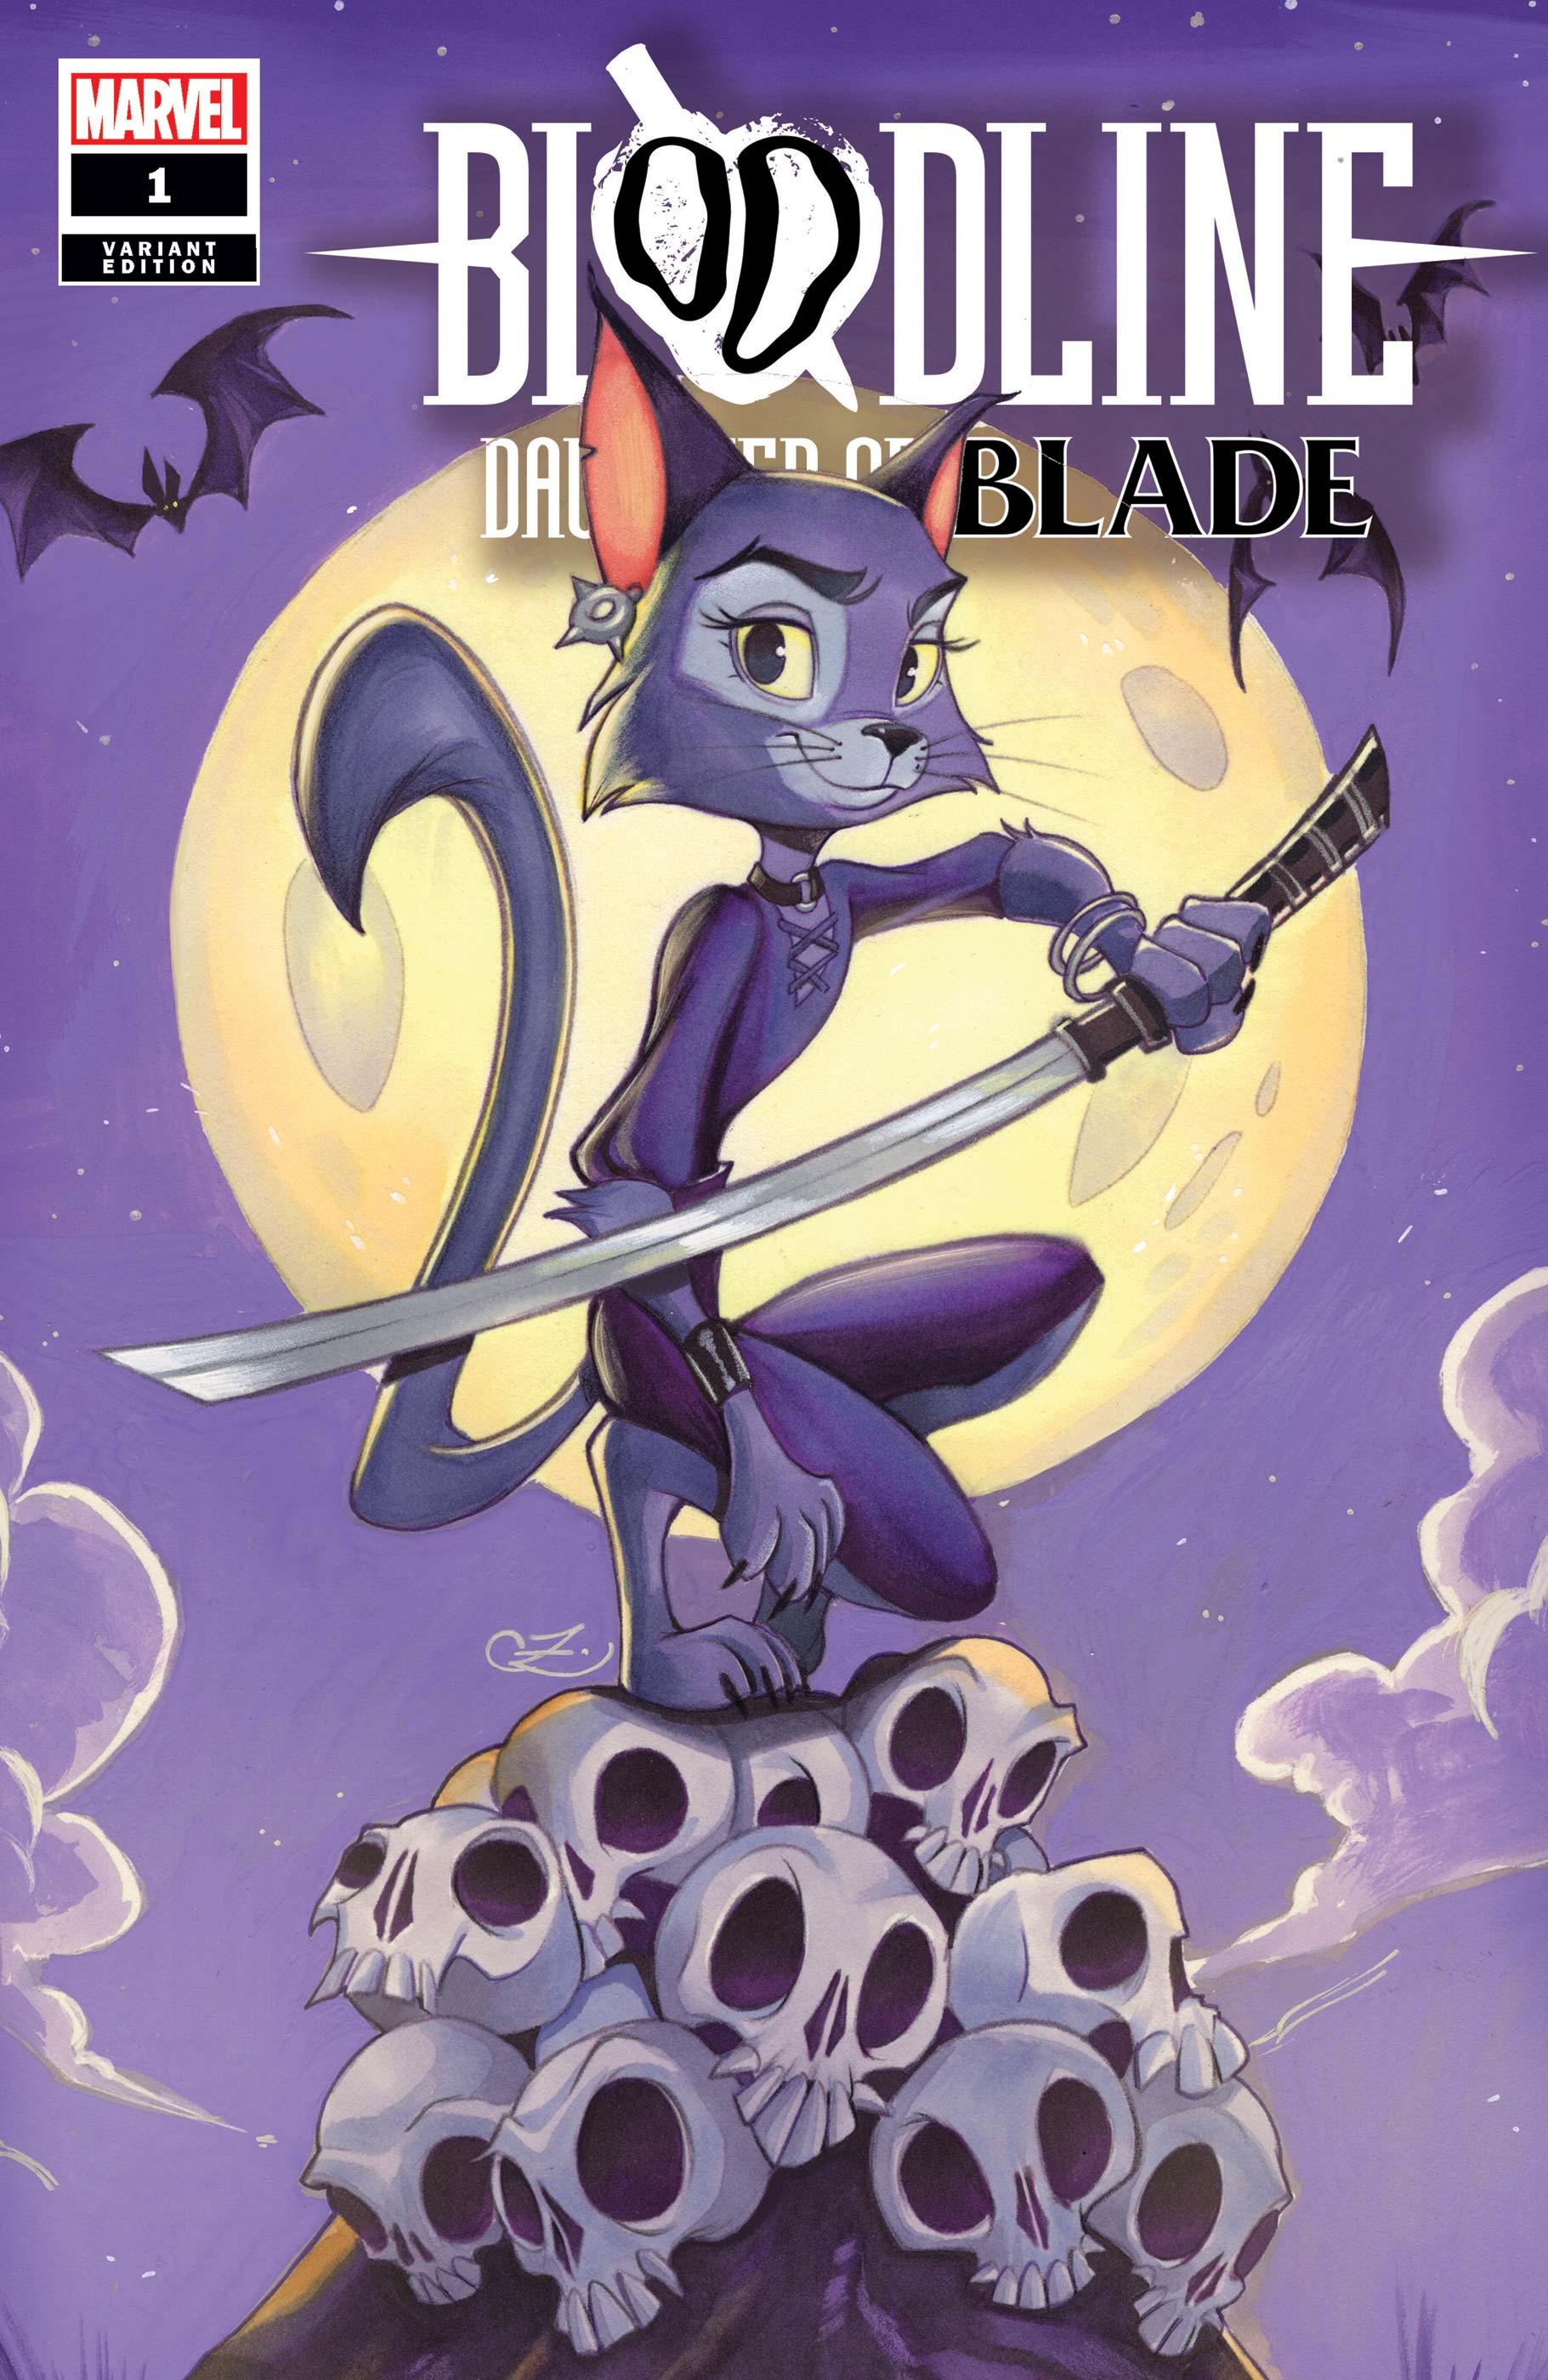 Bloodline: Daughter of Blade (2023) #1 (Variant)